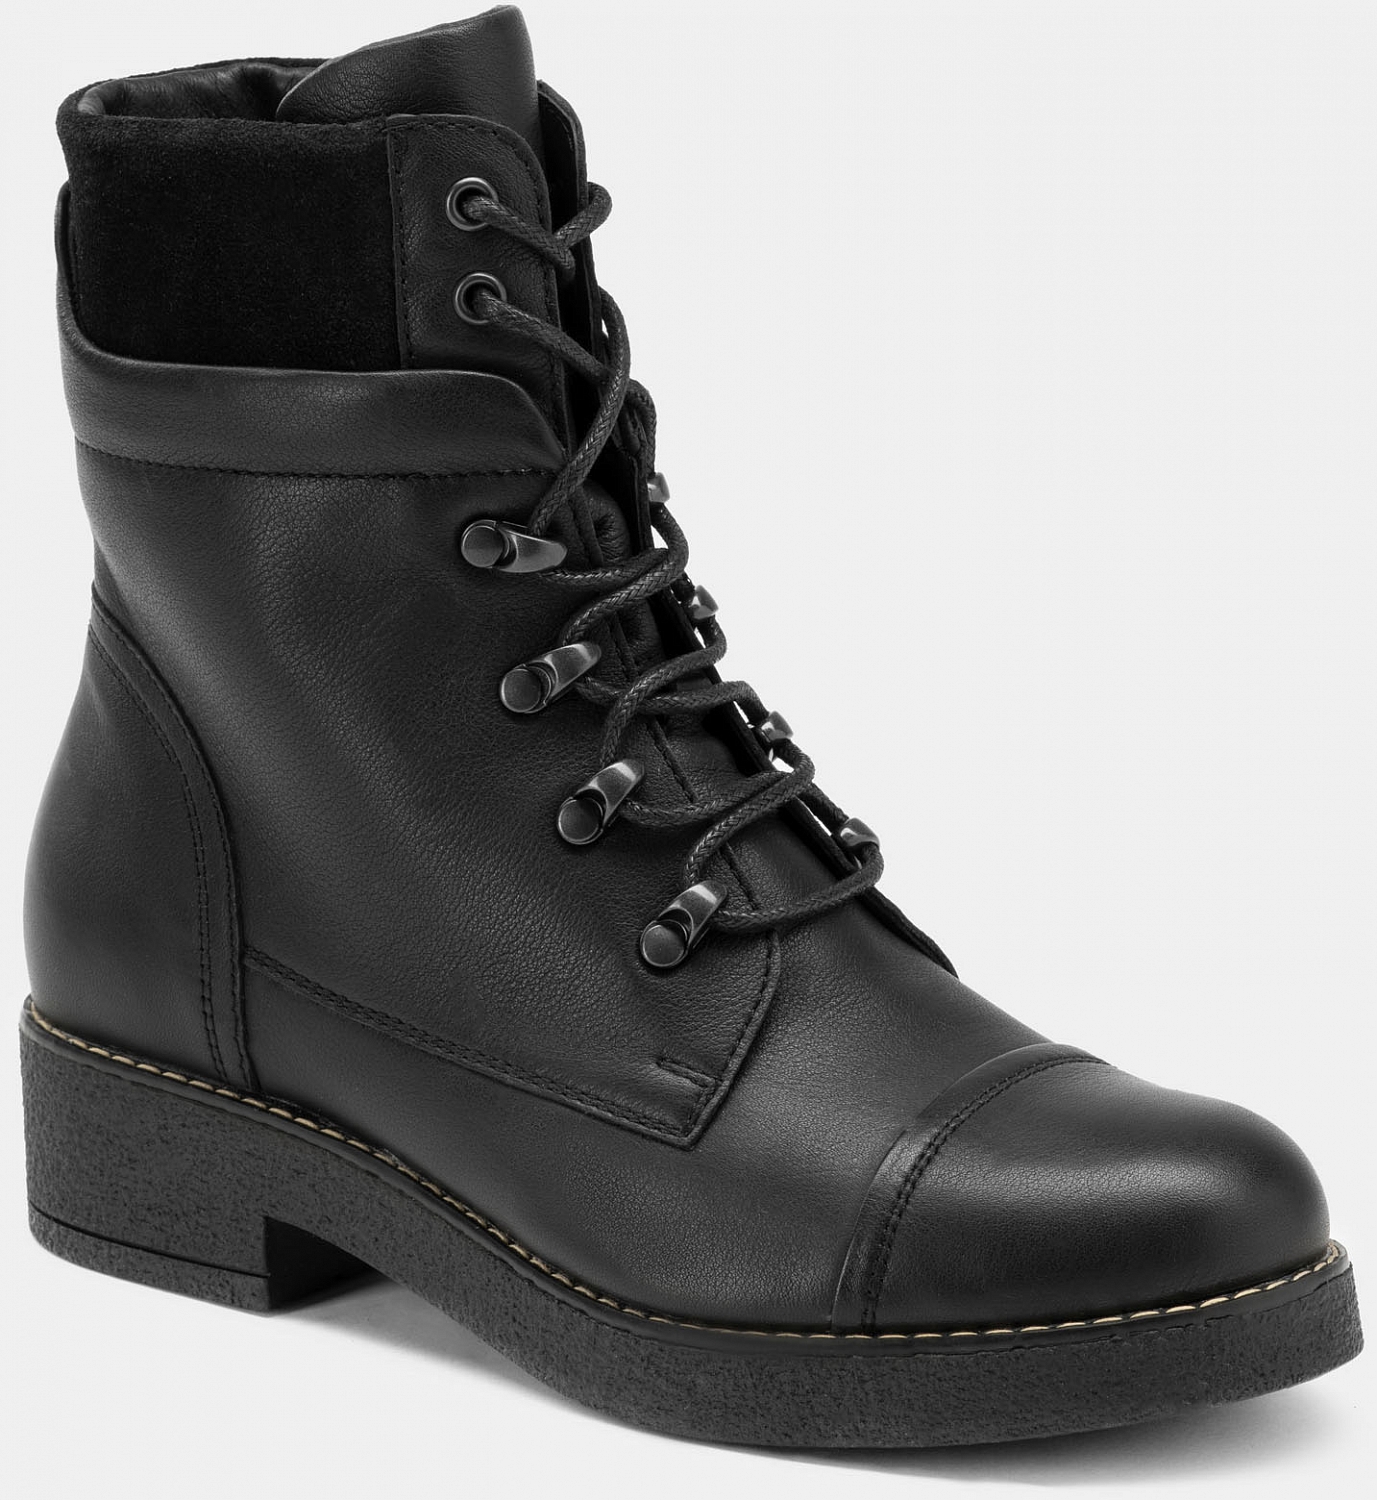 Высокие ботинки женские ALFA (цвет черный, натуральная кожа) — купить поцене 5990 р. в интернет-магазине RALF RINGER